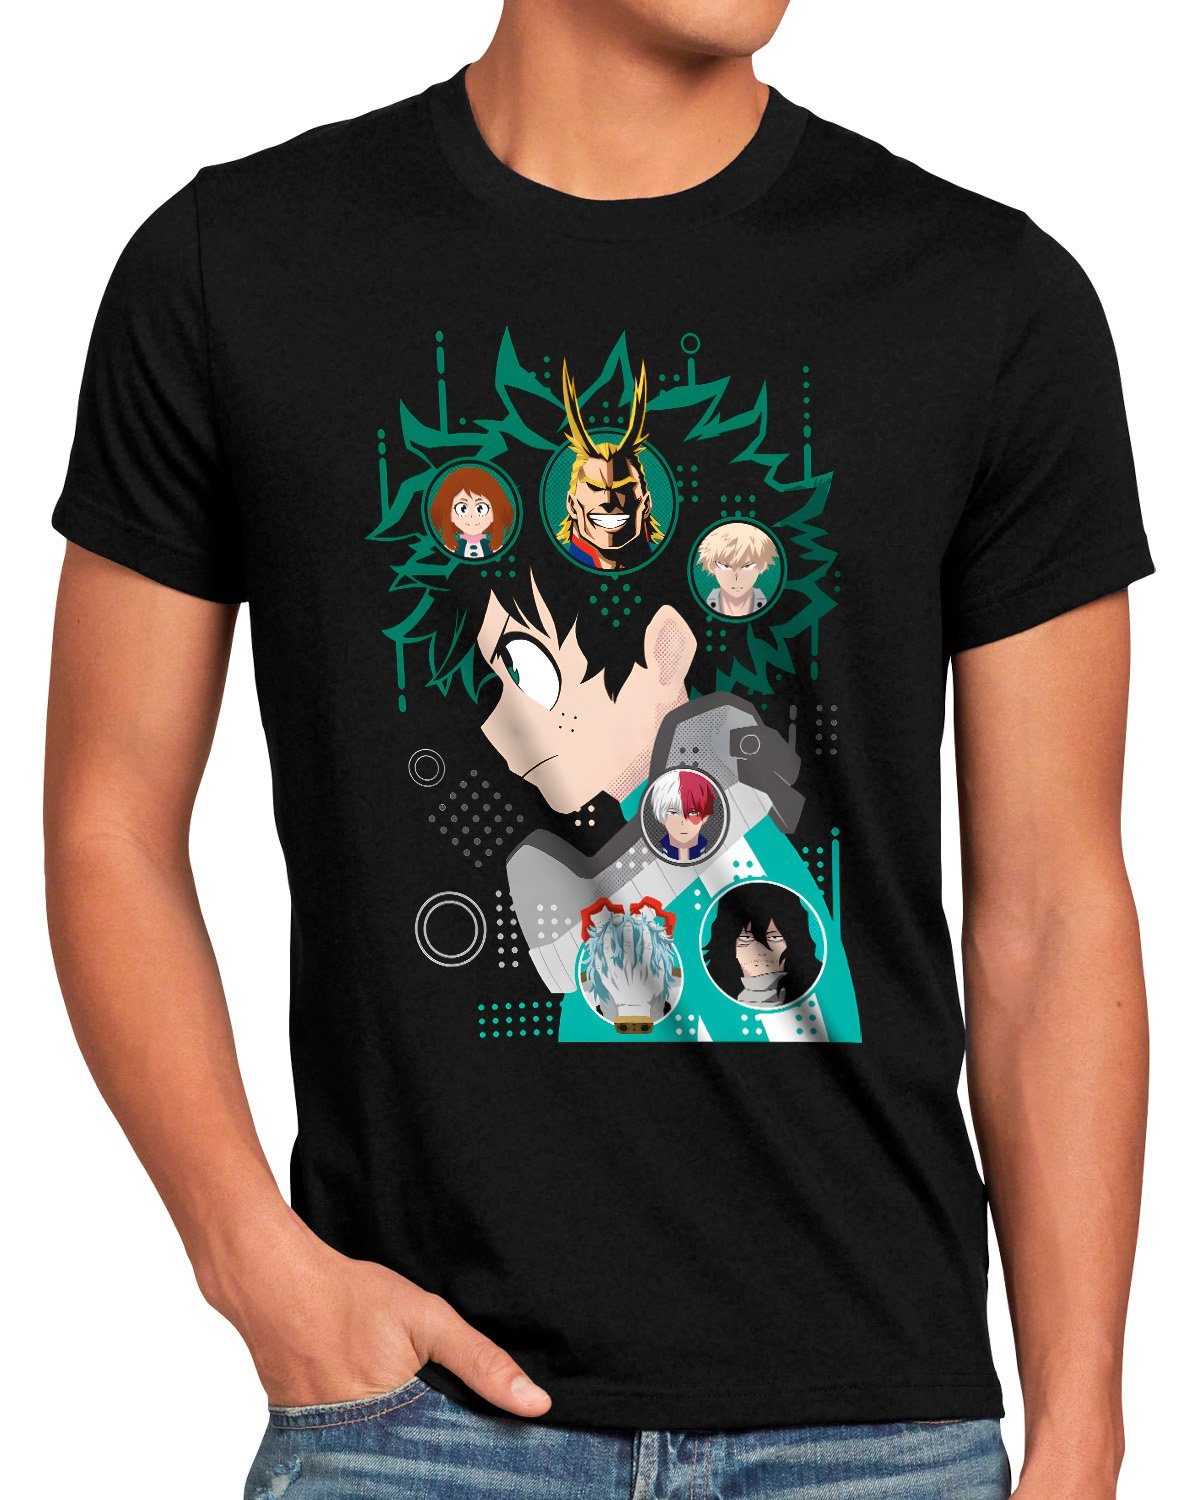 Print-Shirt Green cosplay T-Shirt manga anime academia Be style3 Herren hero my